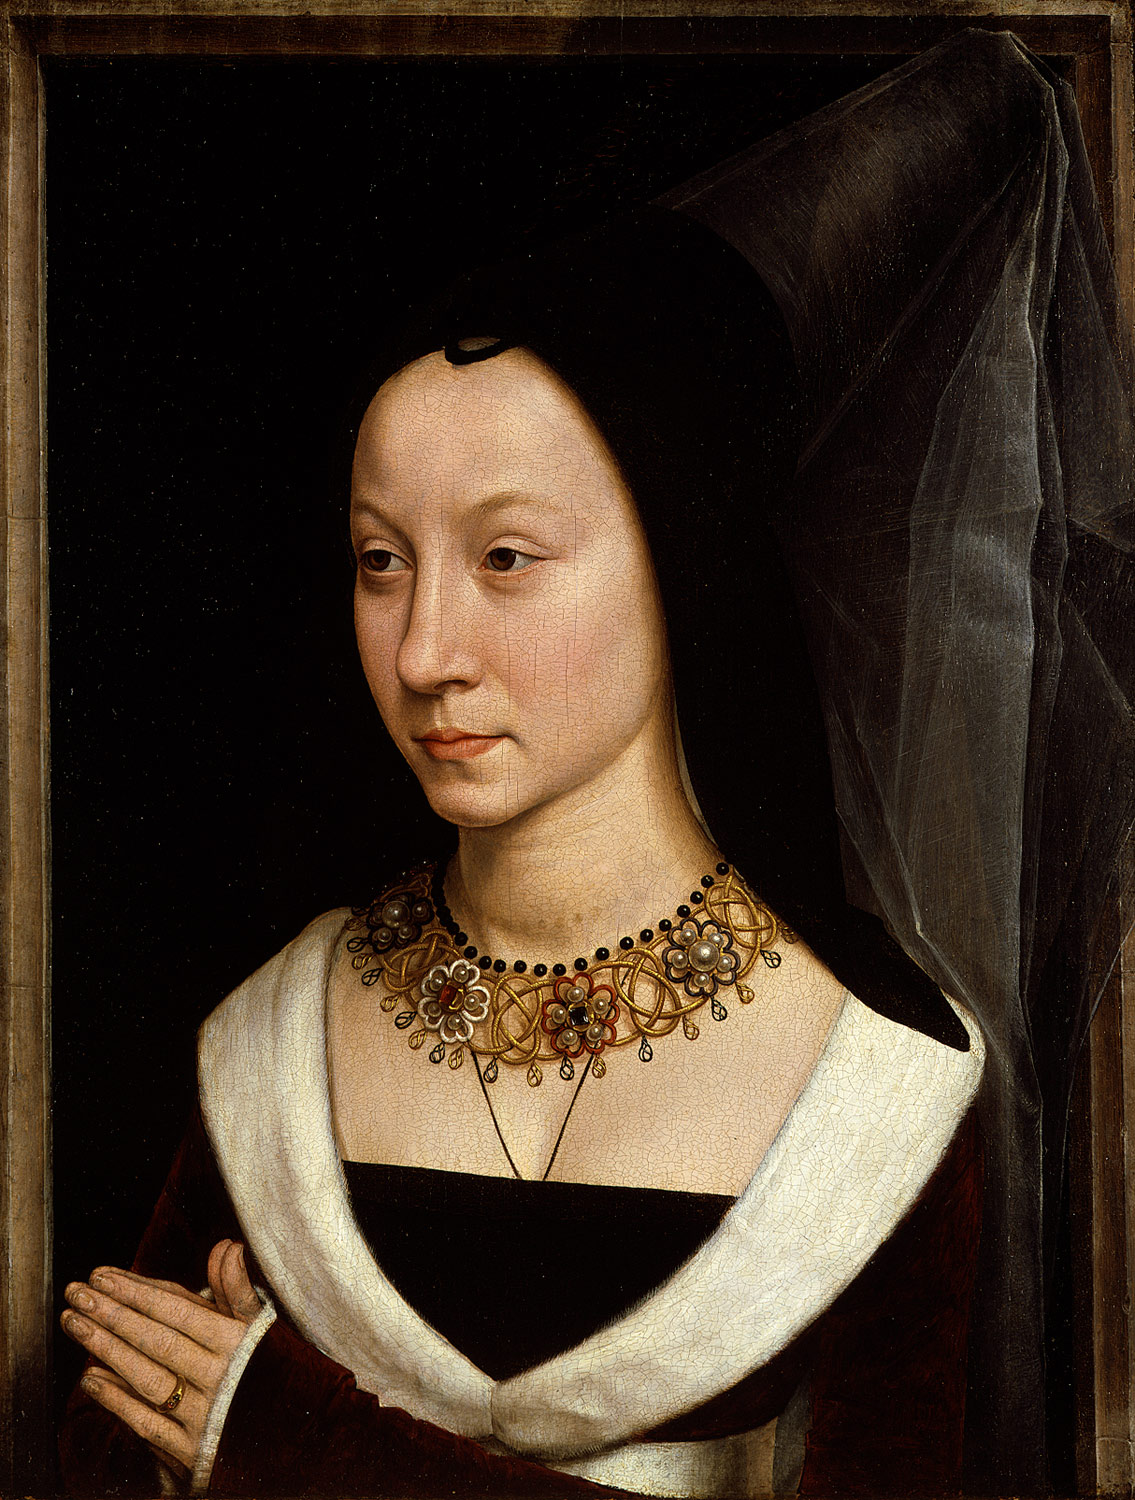 Maria Portinari by Hans Memling - c. 1470–72 - 44.1 x 34 cm Metropolitan Museum of Art